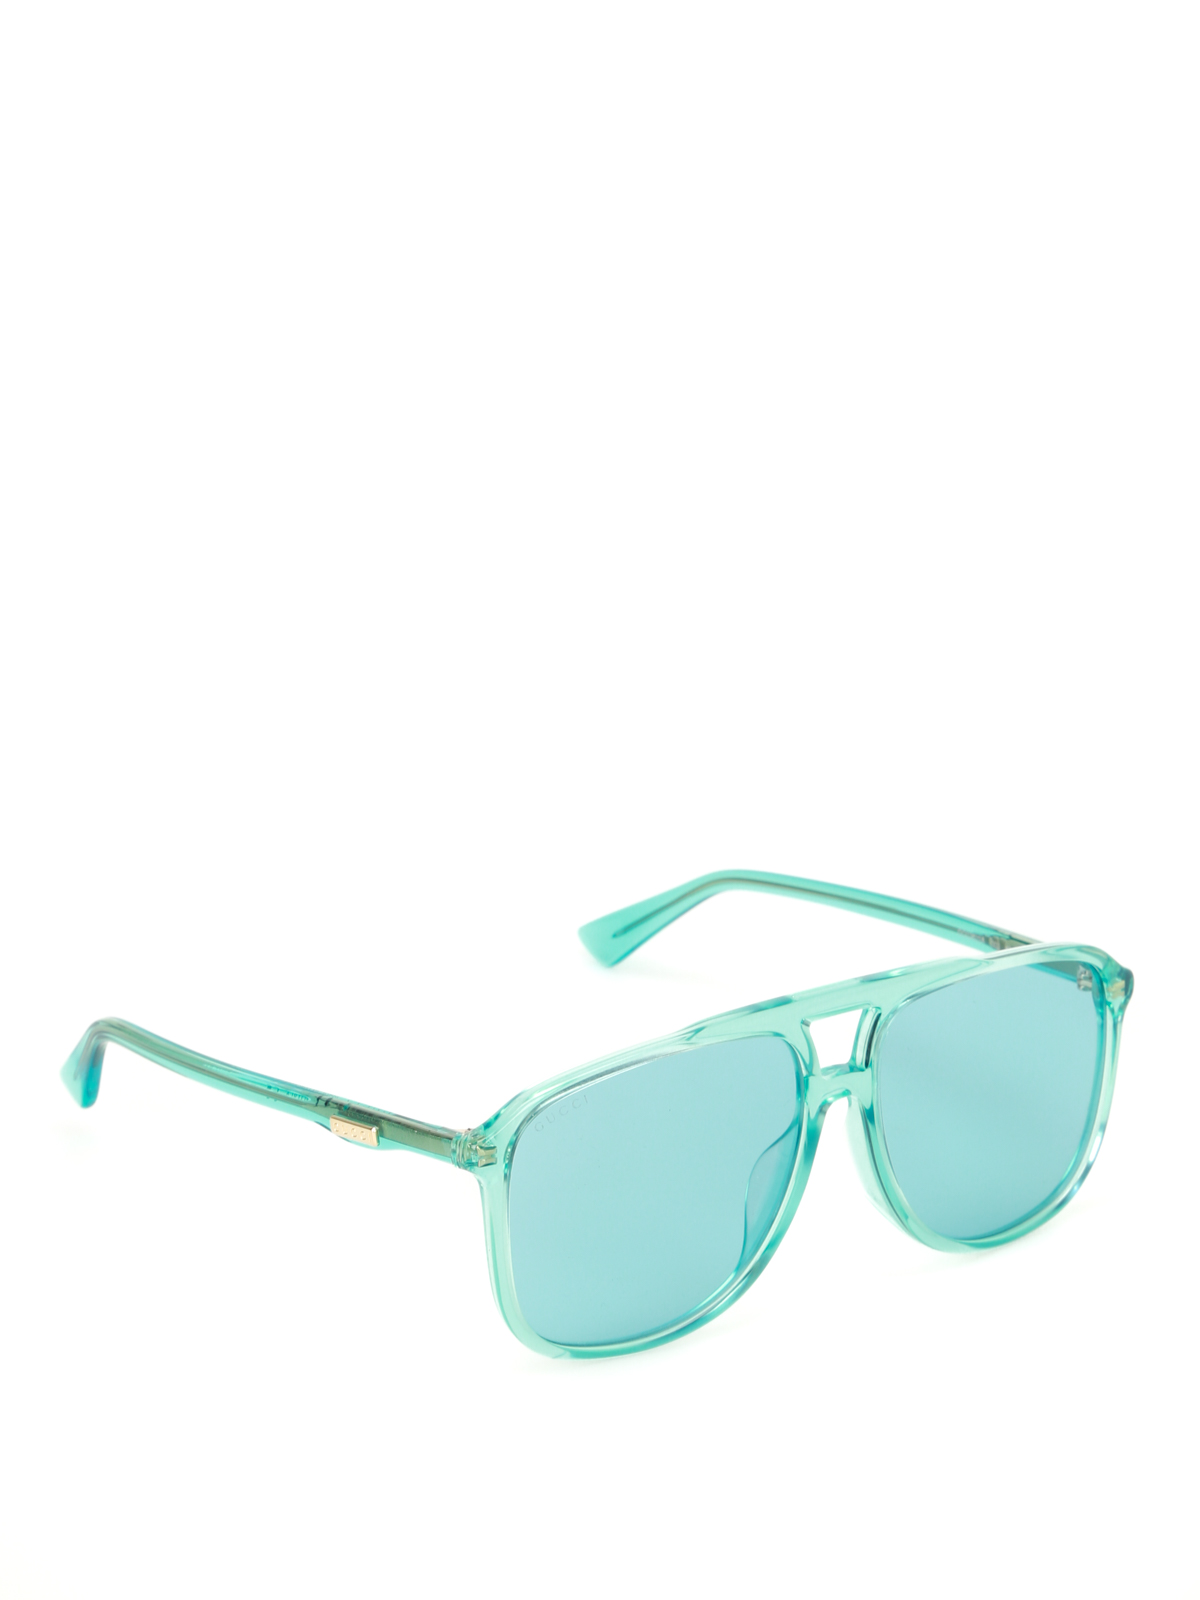 Gucci - Light blue square sunglasses 